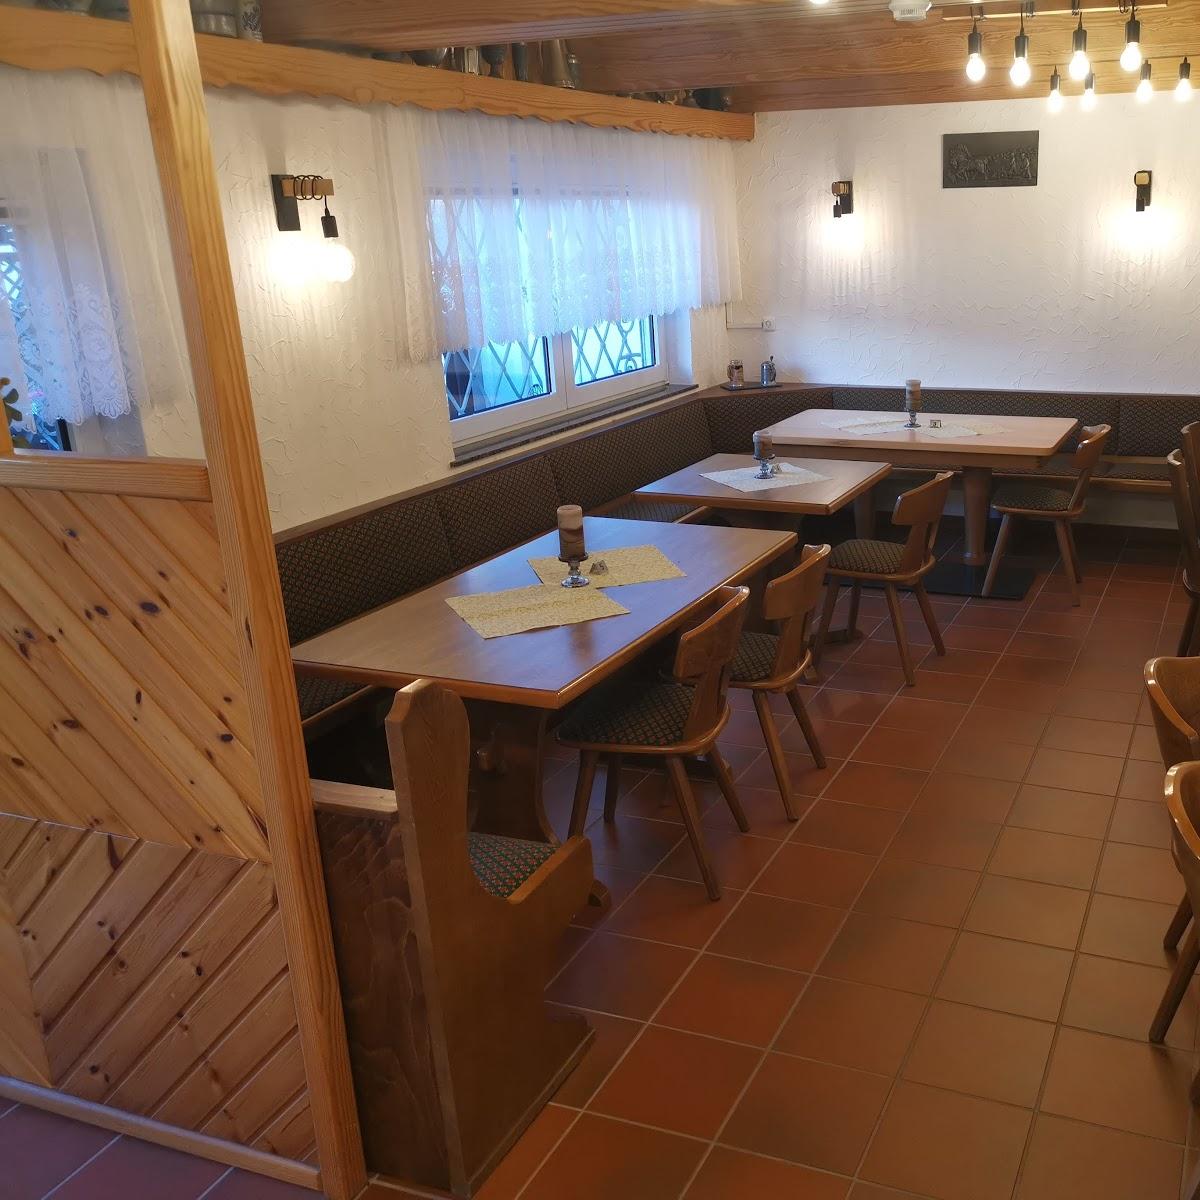 Restaurant "Zum Michel" in Scheidt